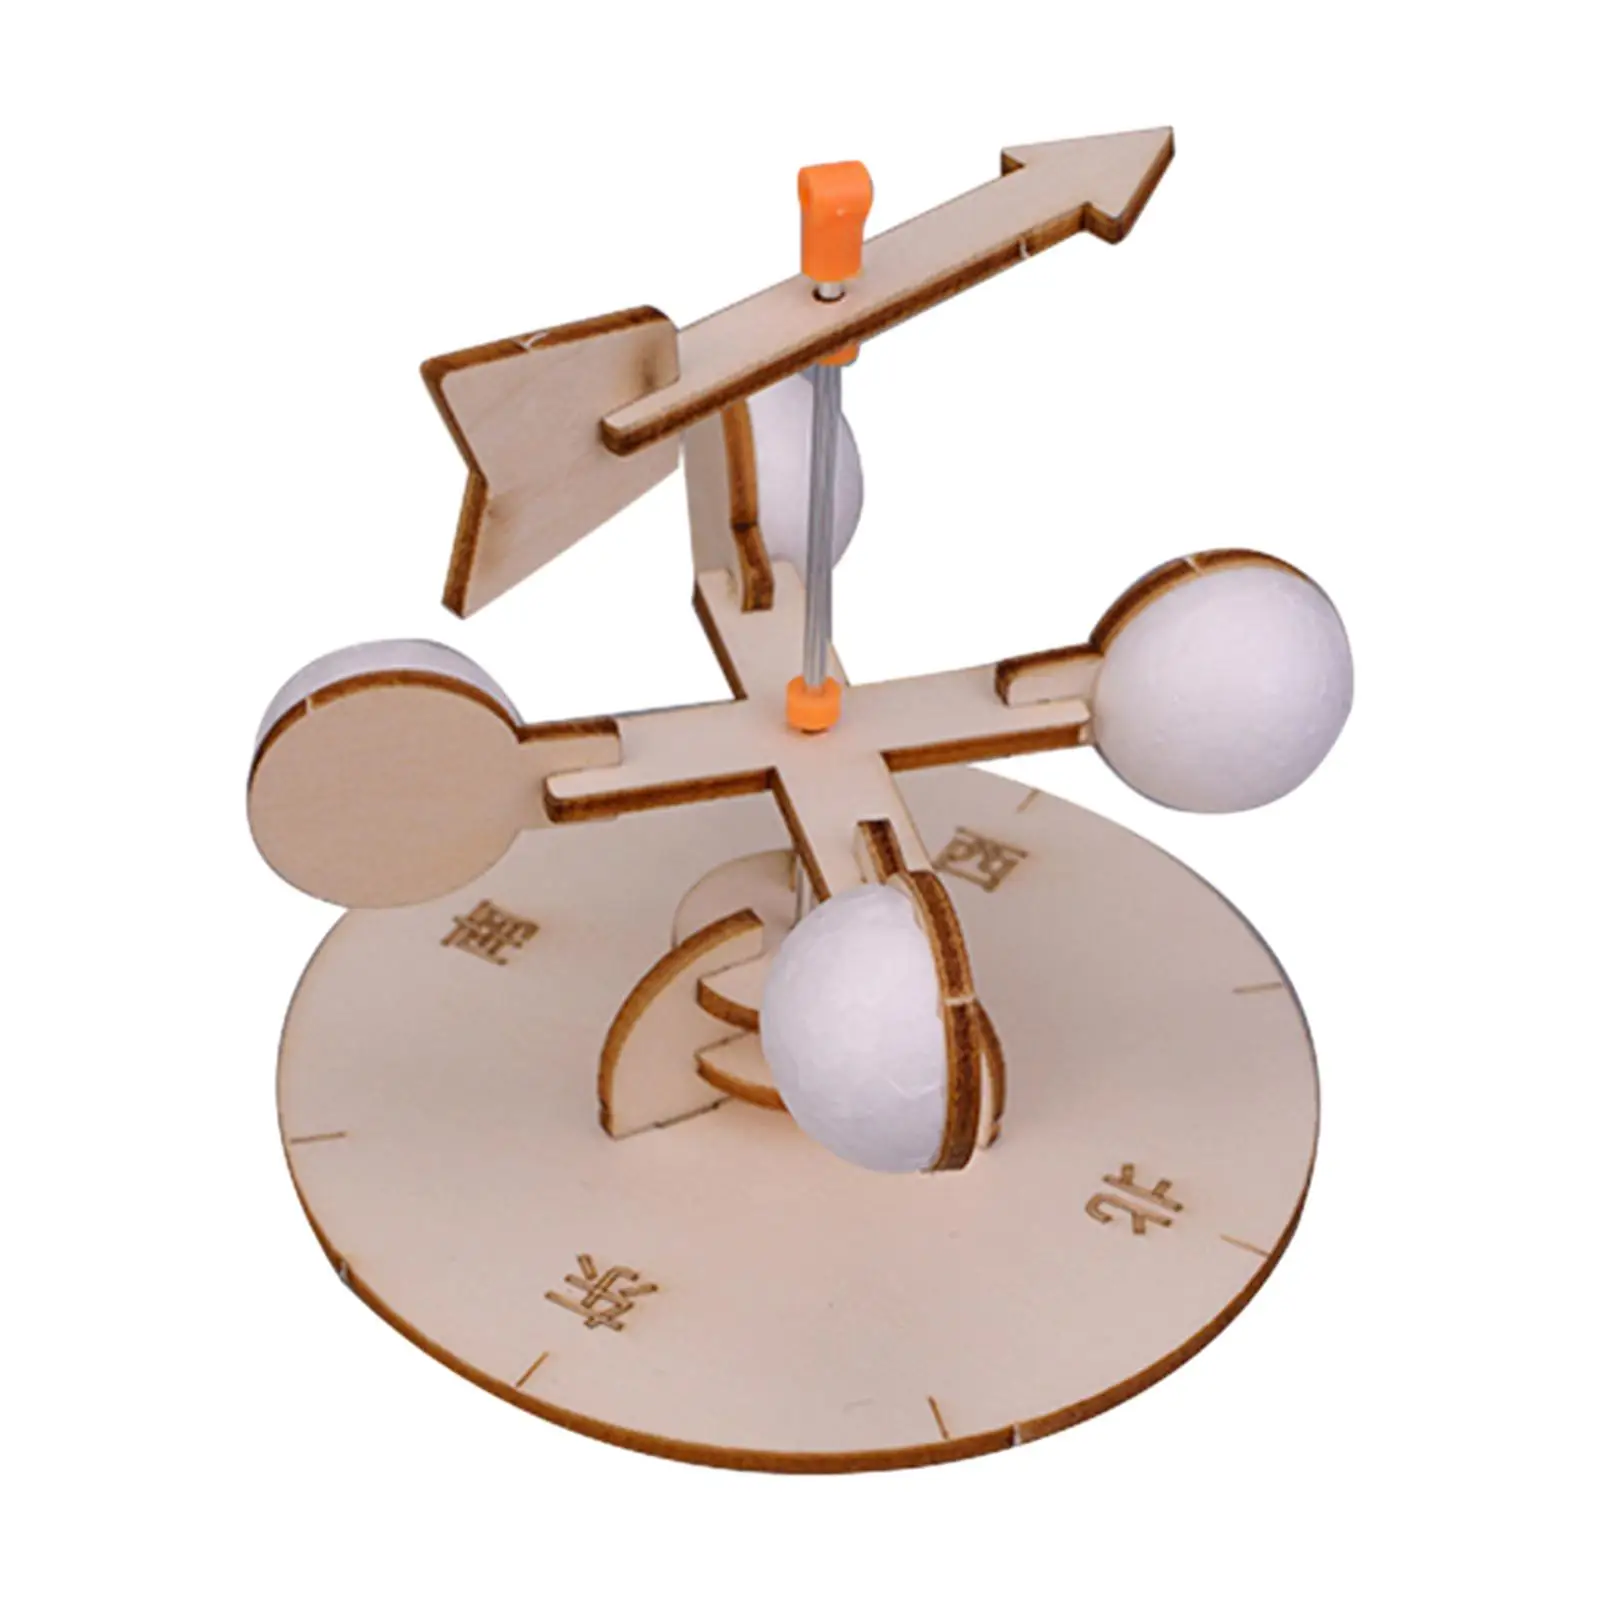 Drevo Vedy Vietor Veje Toy Model Súpravy Inovácie 3D Puzzle Budovy Hračka